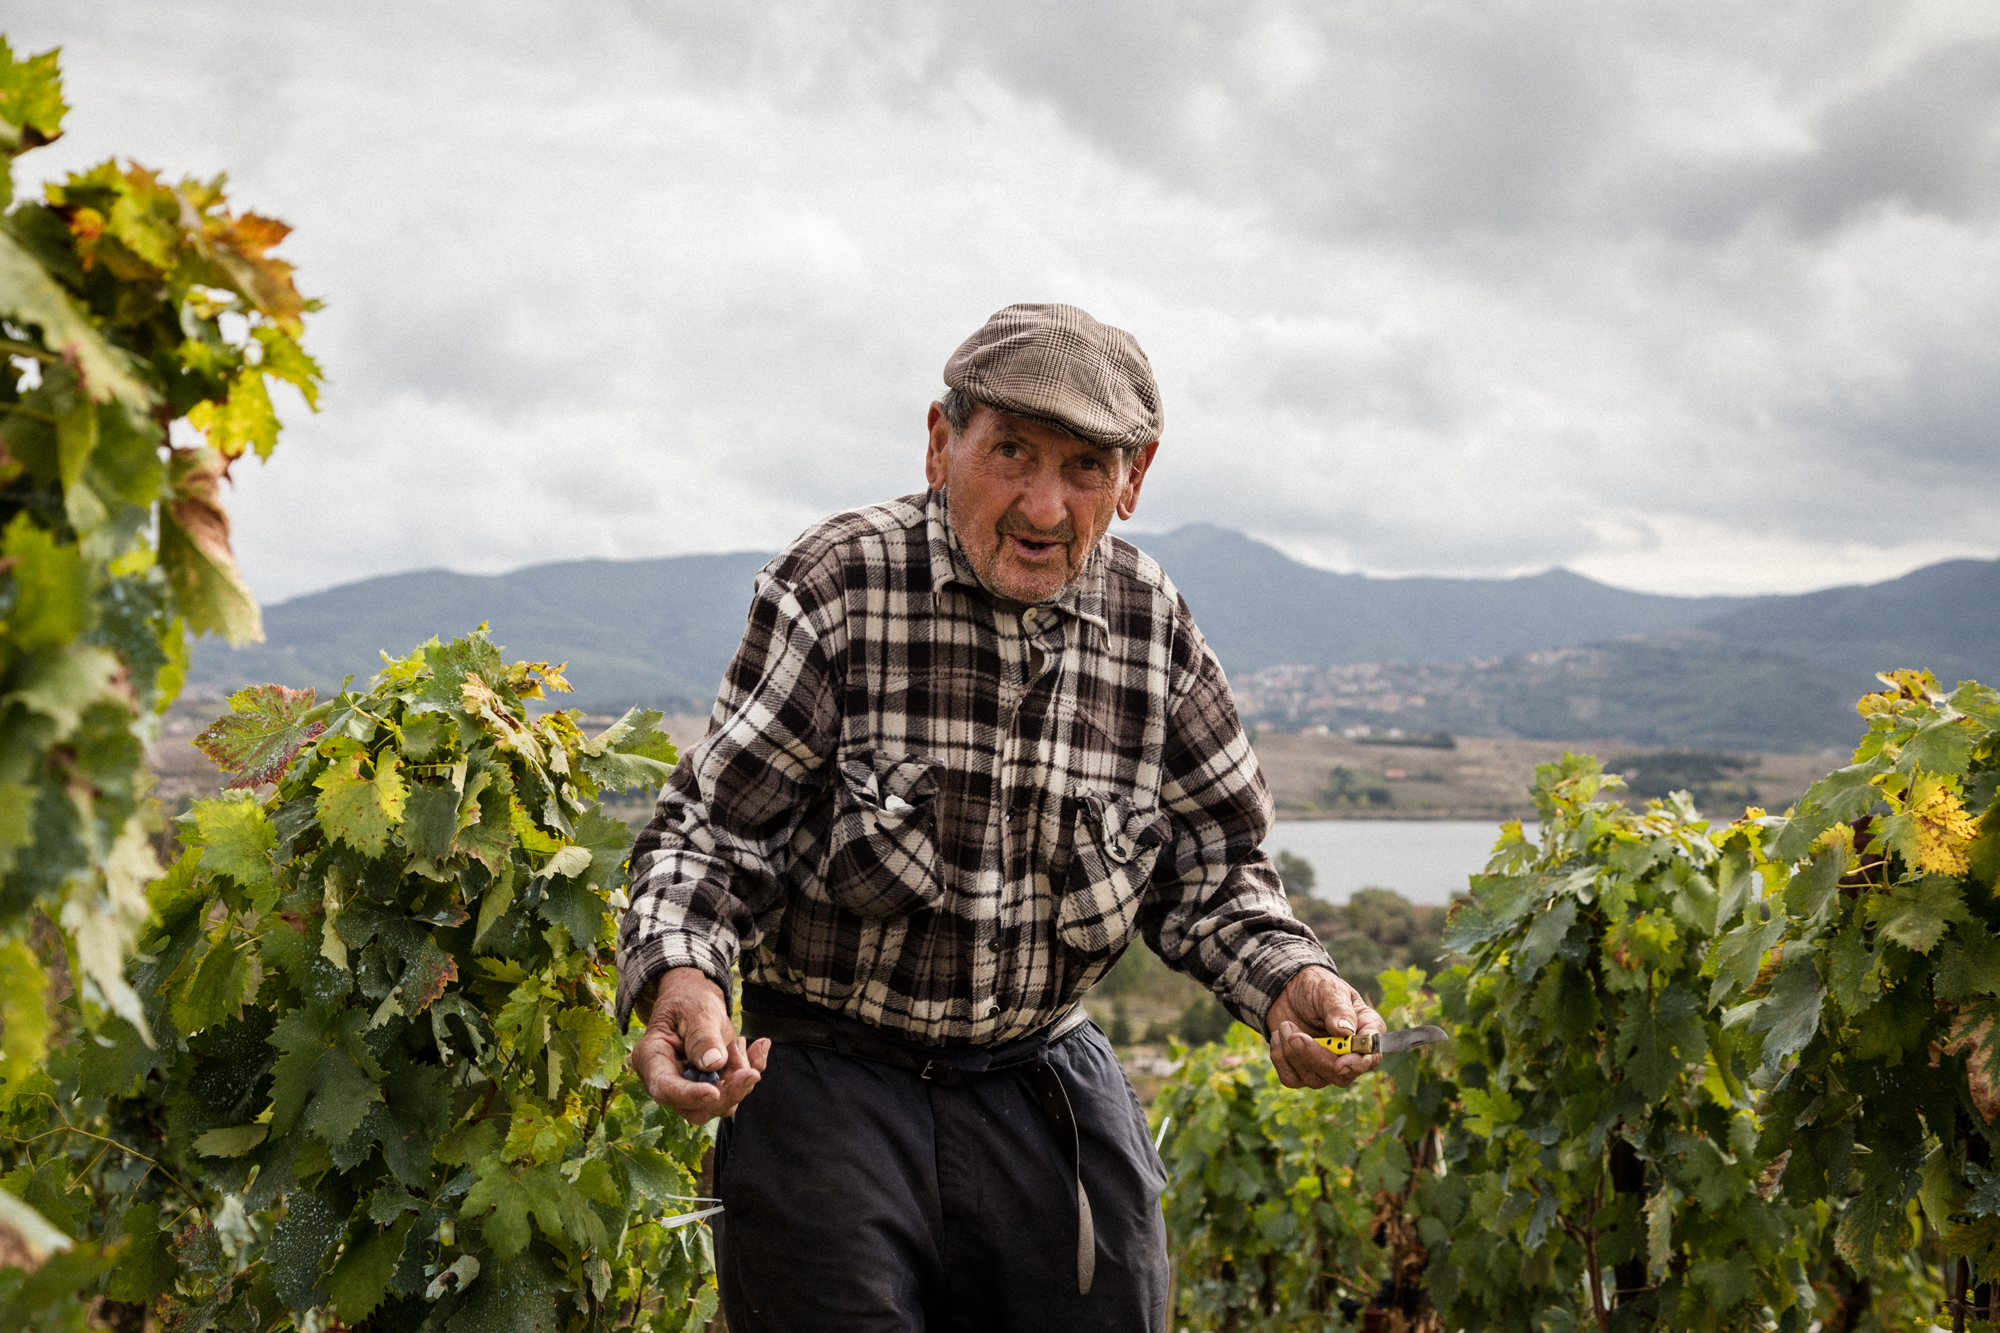  Un anziano signore della zona. Ogni anno coltiva i propri vigneti per produrre uva per se e la sua famiglia. Tito (Zona Industriale), Ottobre 2015 